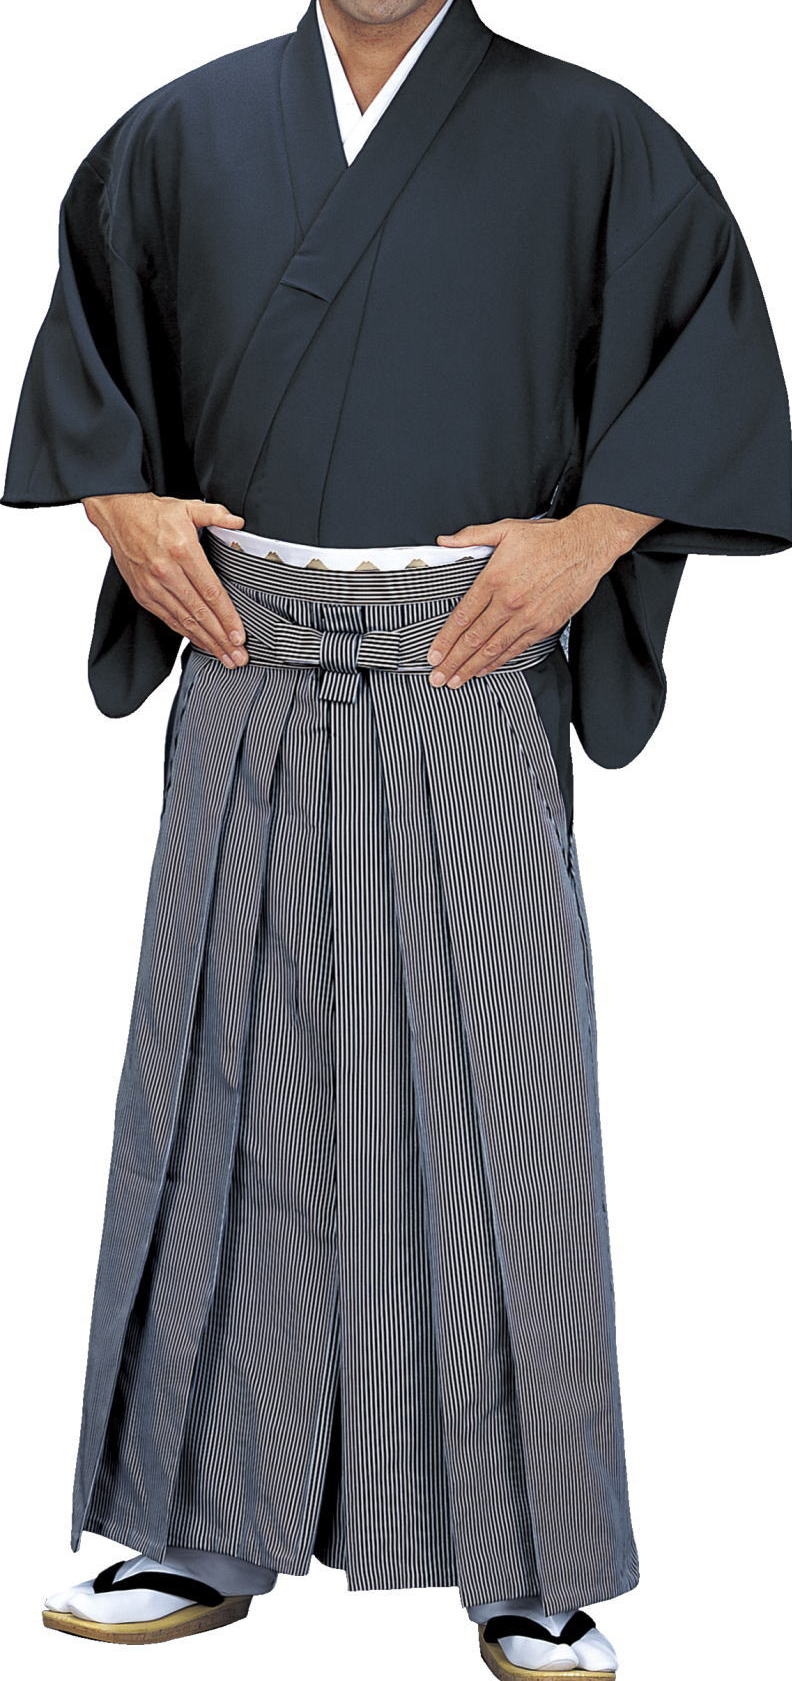 縞袴・袴下きものキングサイズなどの踊り衣裳や踊り用小物、和装用品